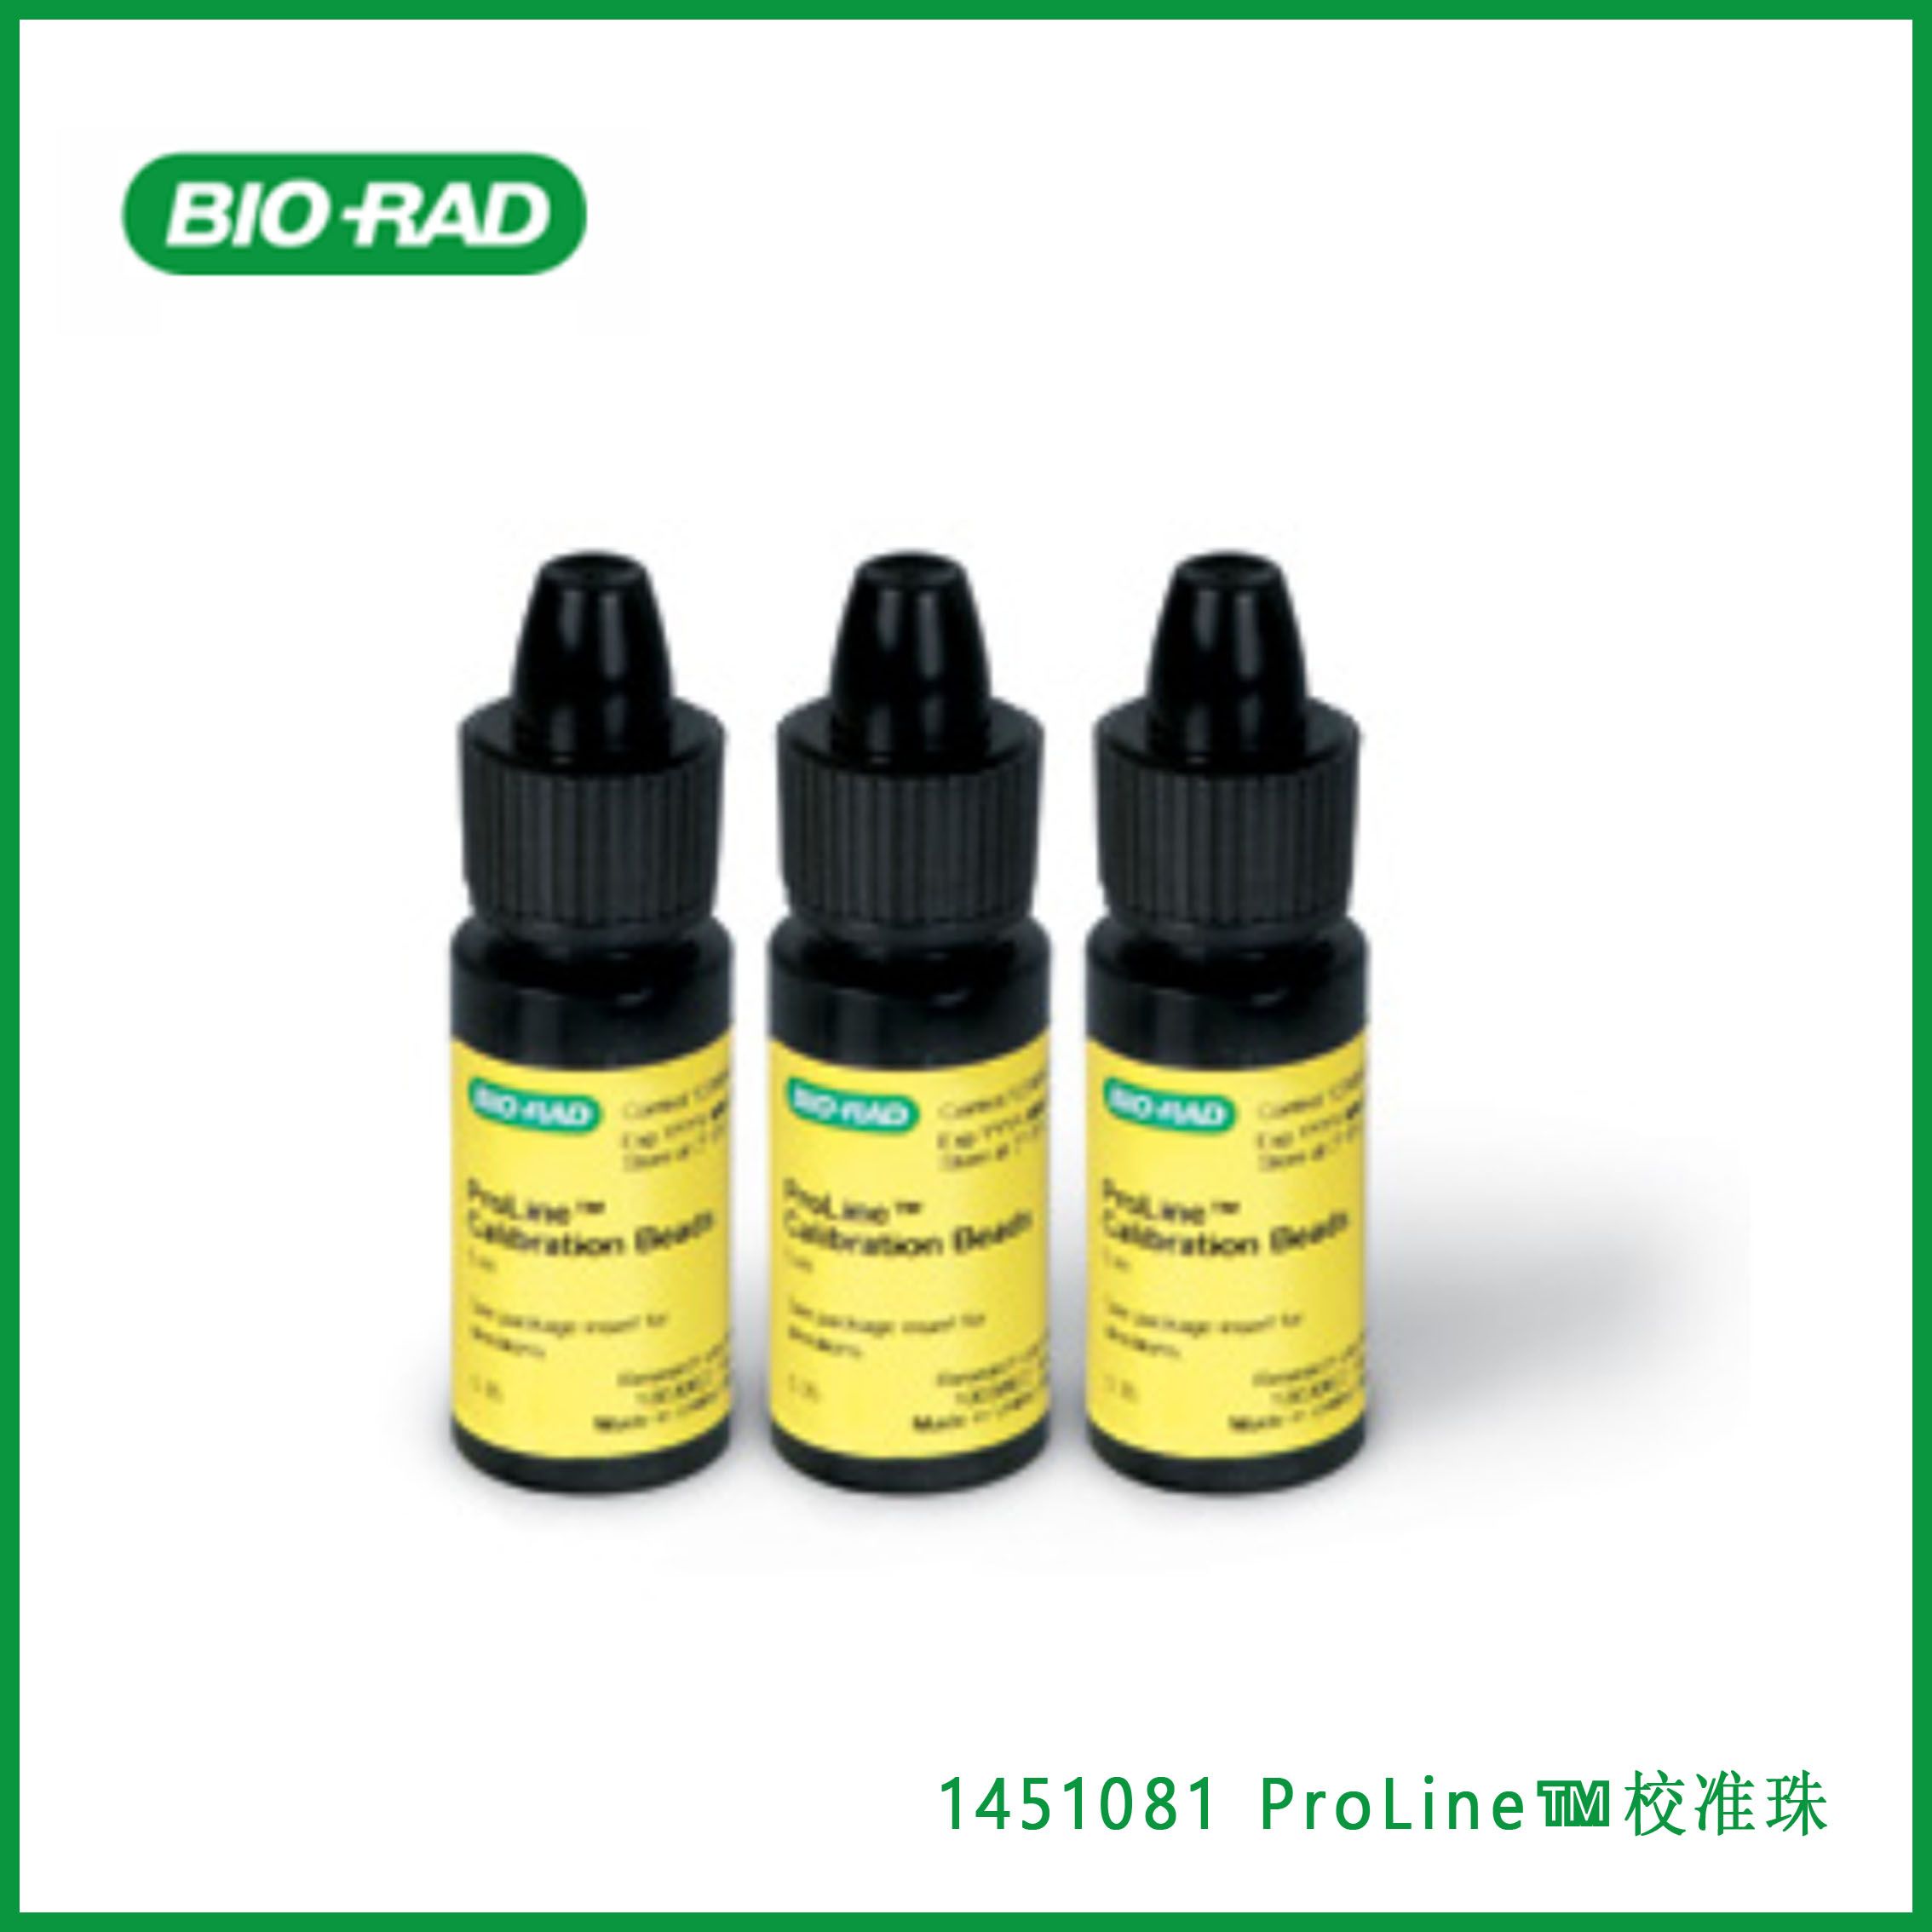 伯乐Bio-rad 1451081 ProLine™ Calibration Beads ，ProLine™ 校准珠，现货